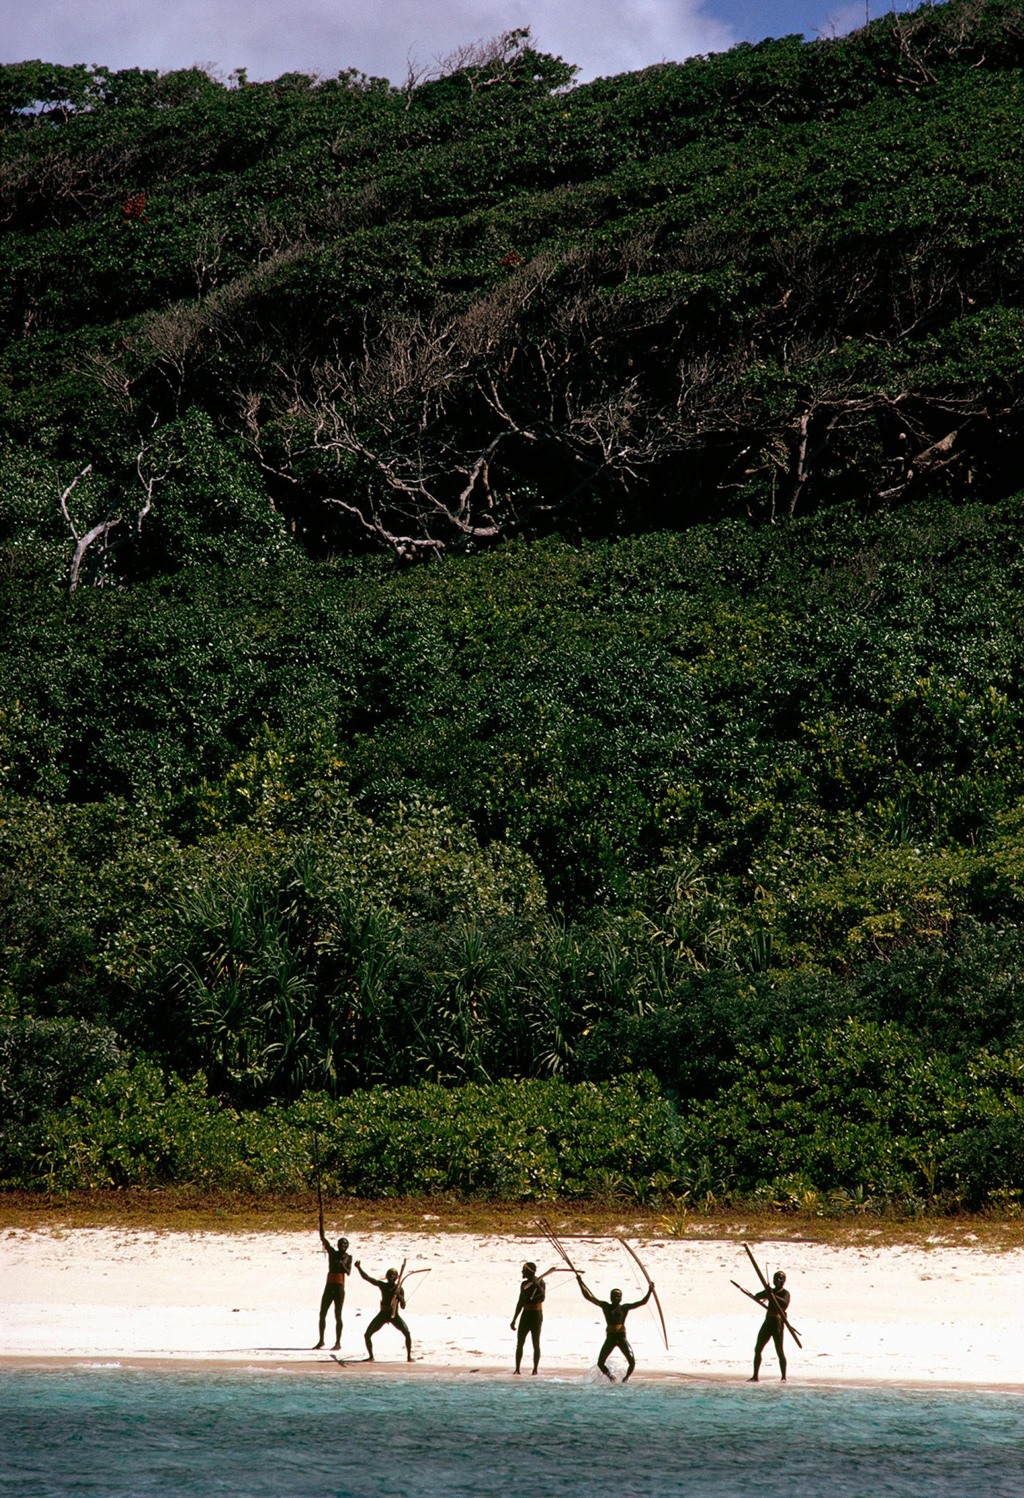 يعد حمل أفراد القبيلة للأقواس والسهام على طول شواطئ الجزيرة دليلًا على تحدي القبيلة للعالم الخارجي. نُشرت هذه الصورة لأول مرة في عدد يوليو/تموز سنة 1975 من مجلة ناشيونال جيوغرافيك. صورة: Raghubir Singh/Nat Geo